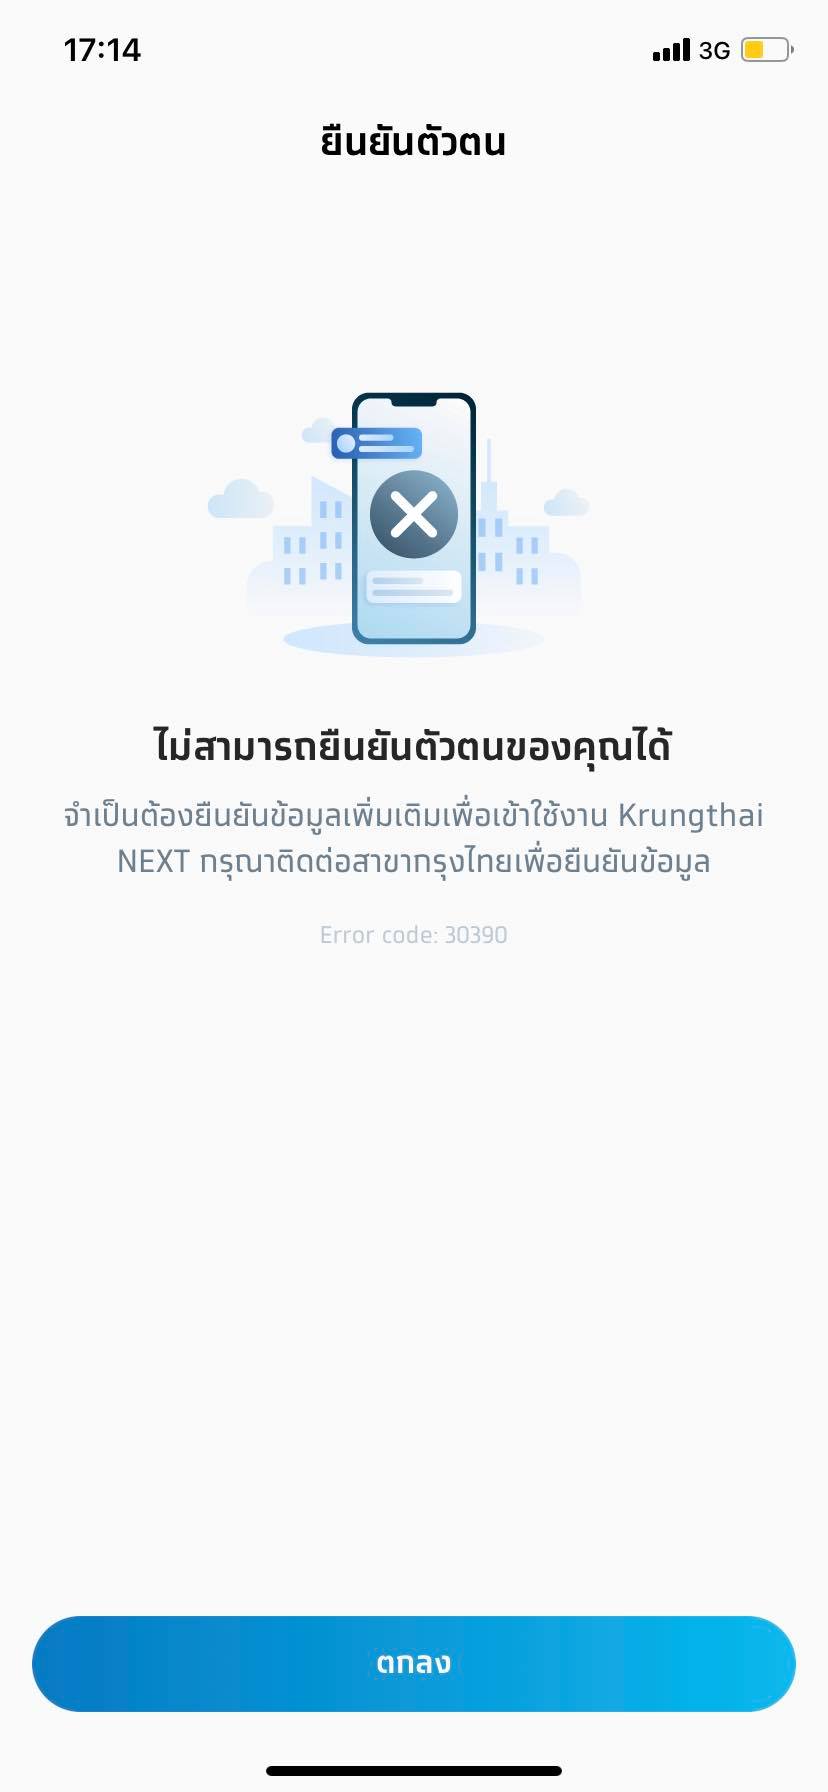 เปิดบัญชีกรุงไทยออนไลน์ไม่ได้ - Pantip